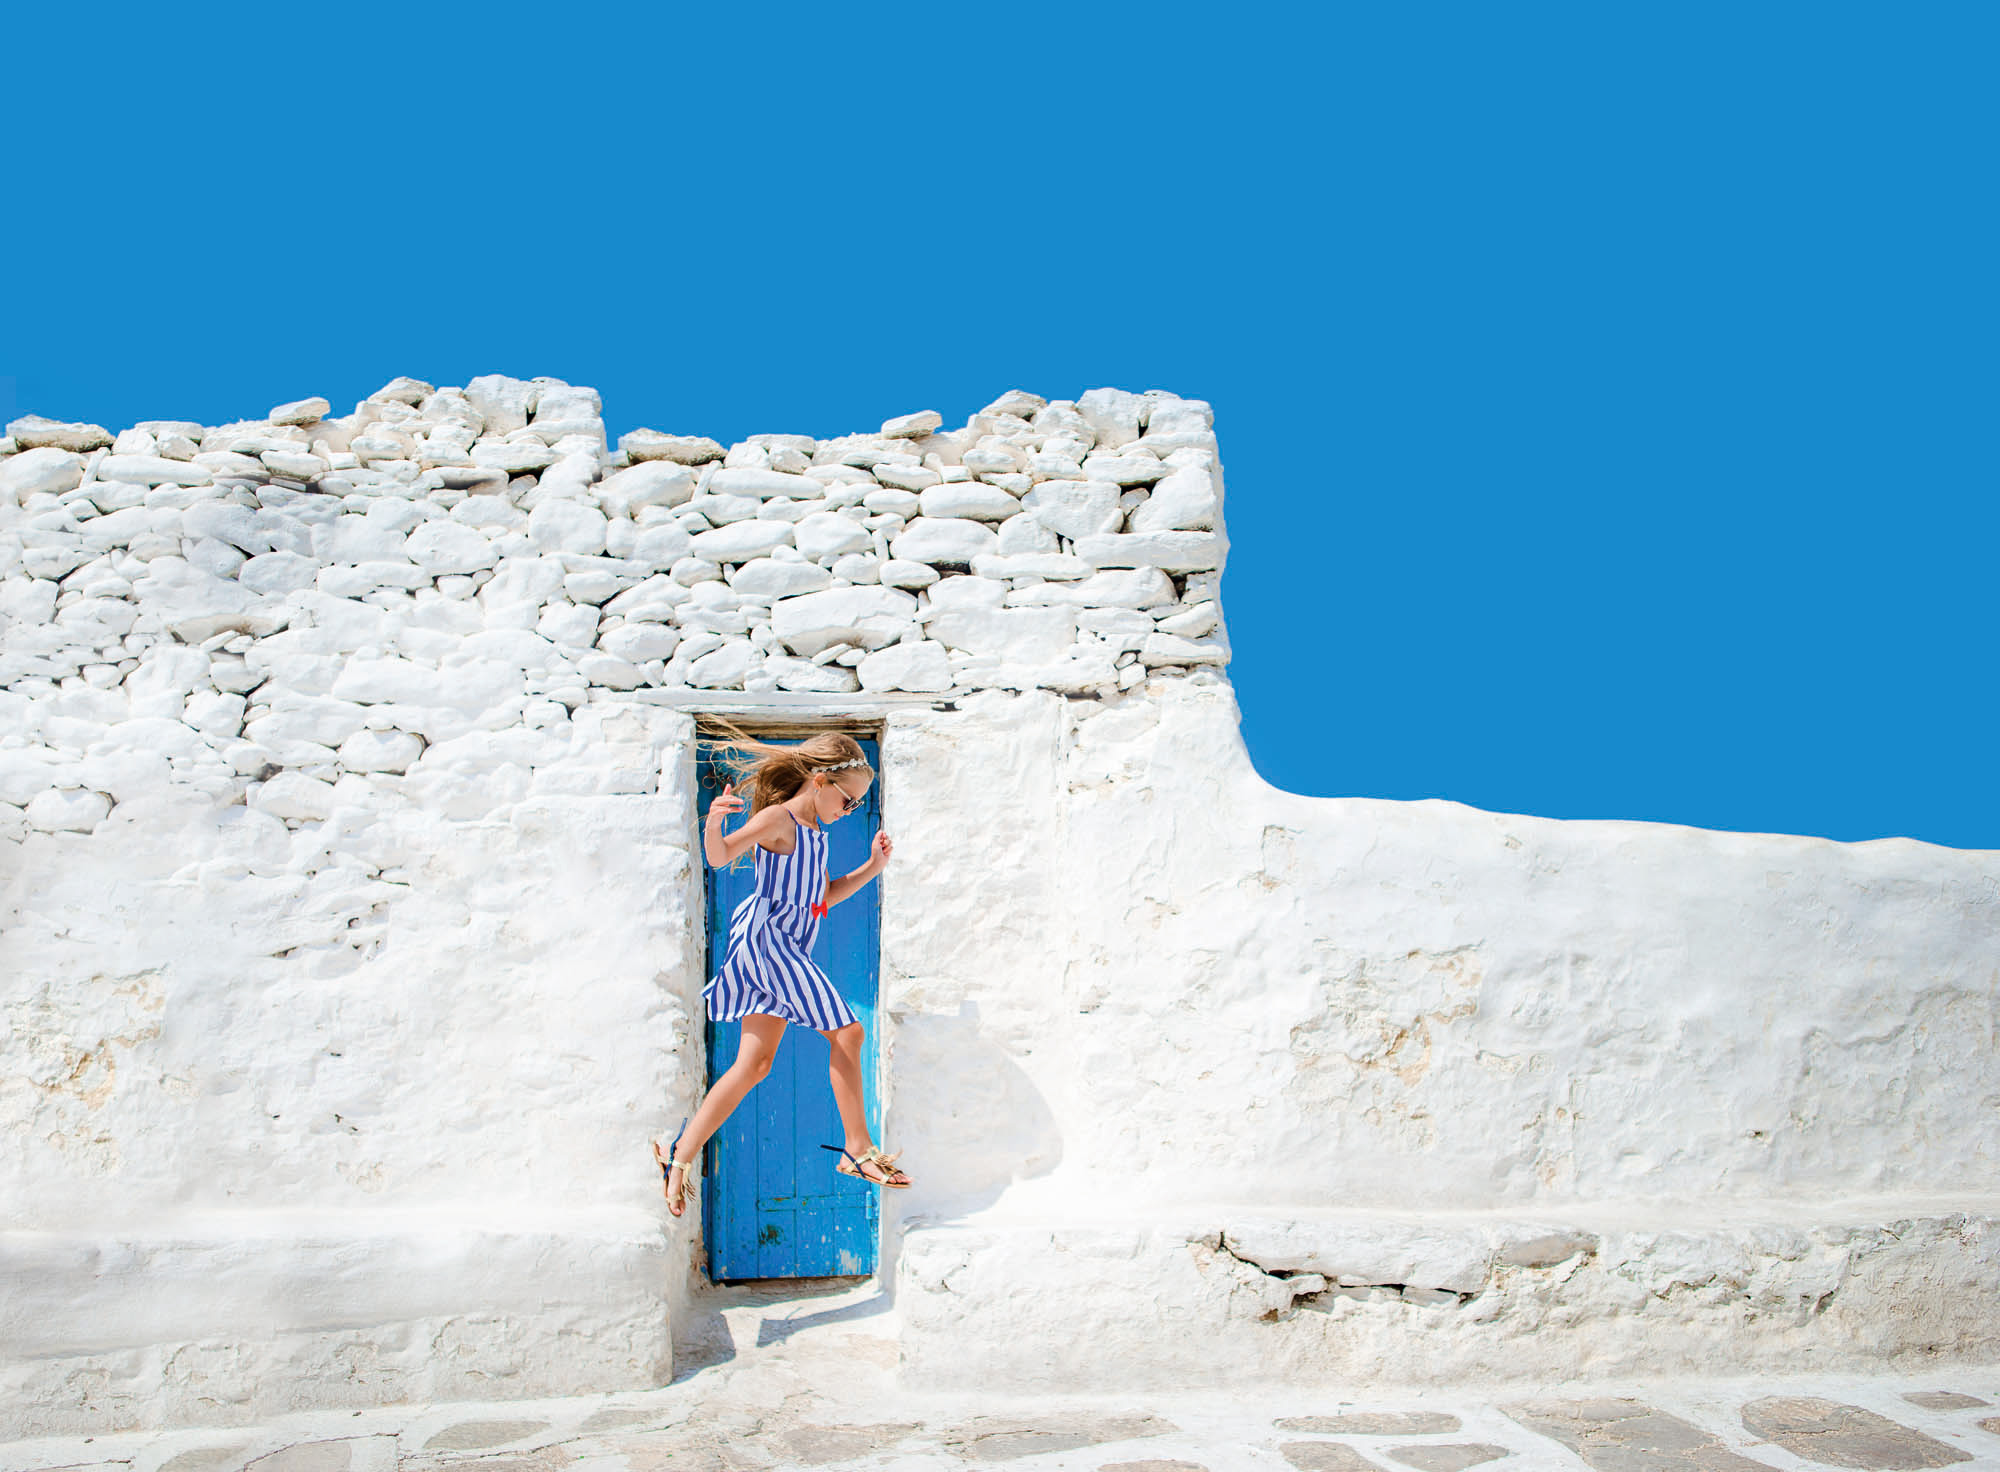 niebieskie niebo i biała ściana, typowy obrazek w grecji, na tle ściany skacze dziewczynka w niebieskiej sukience, idylliczny widok